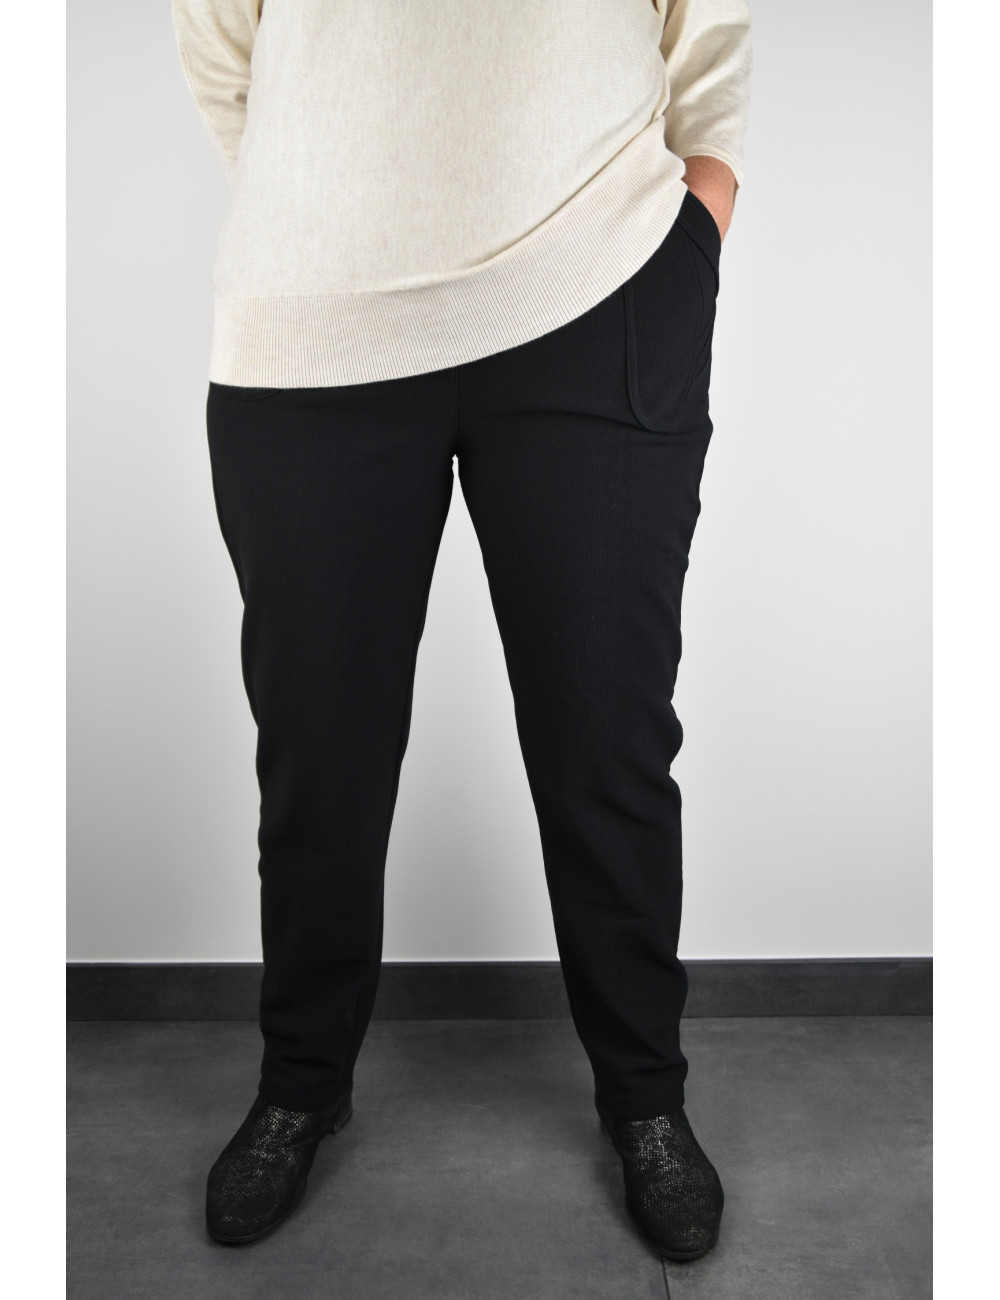 Pantalon femme noir intérieur polaire taille élastique